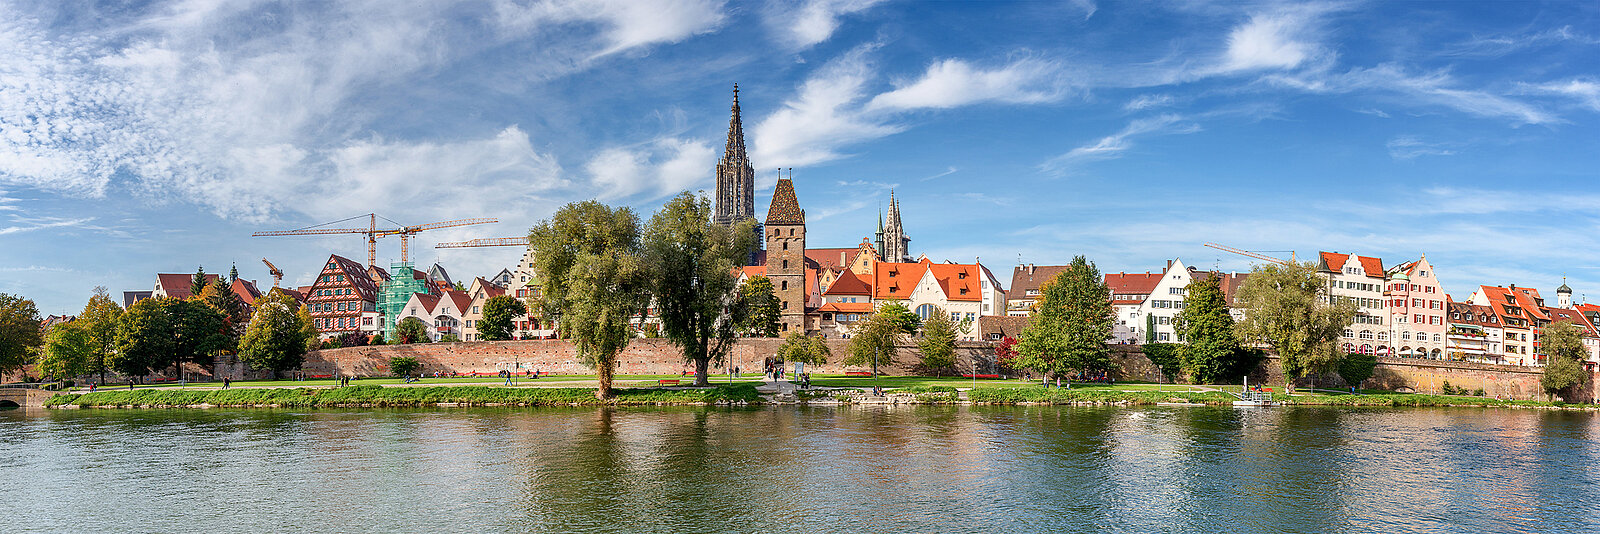 Stadtbild von Ulm mit Flüssen, einem Kirchturm, Häusern und Bäumen